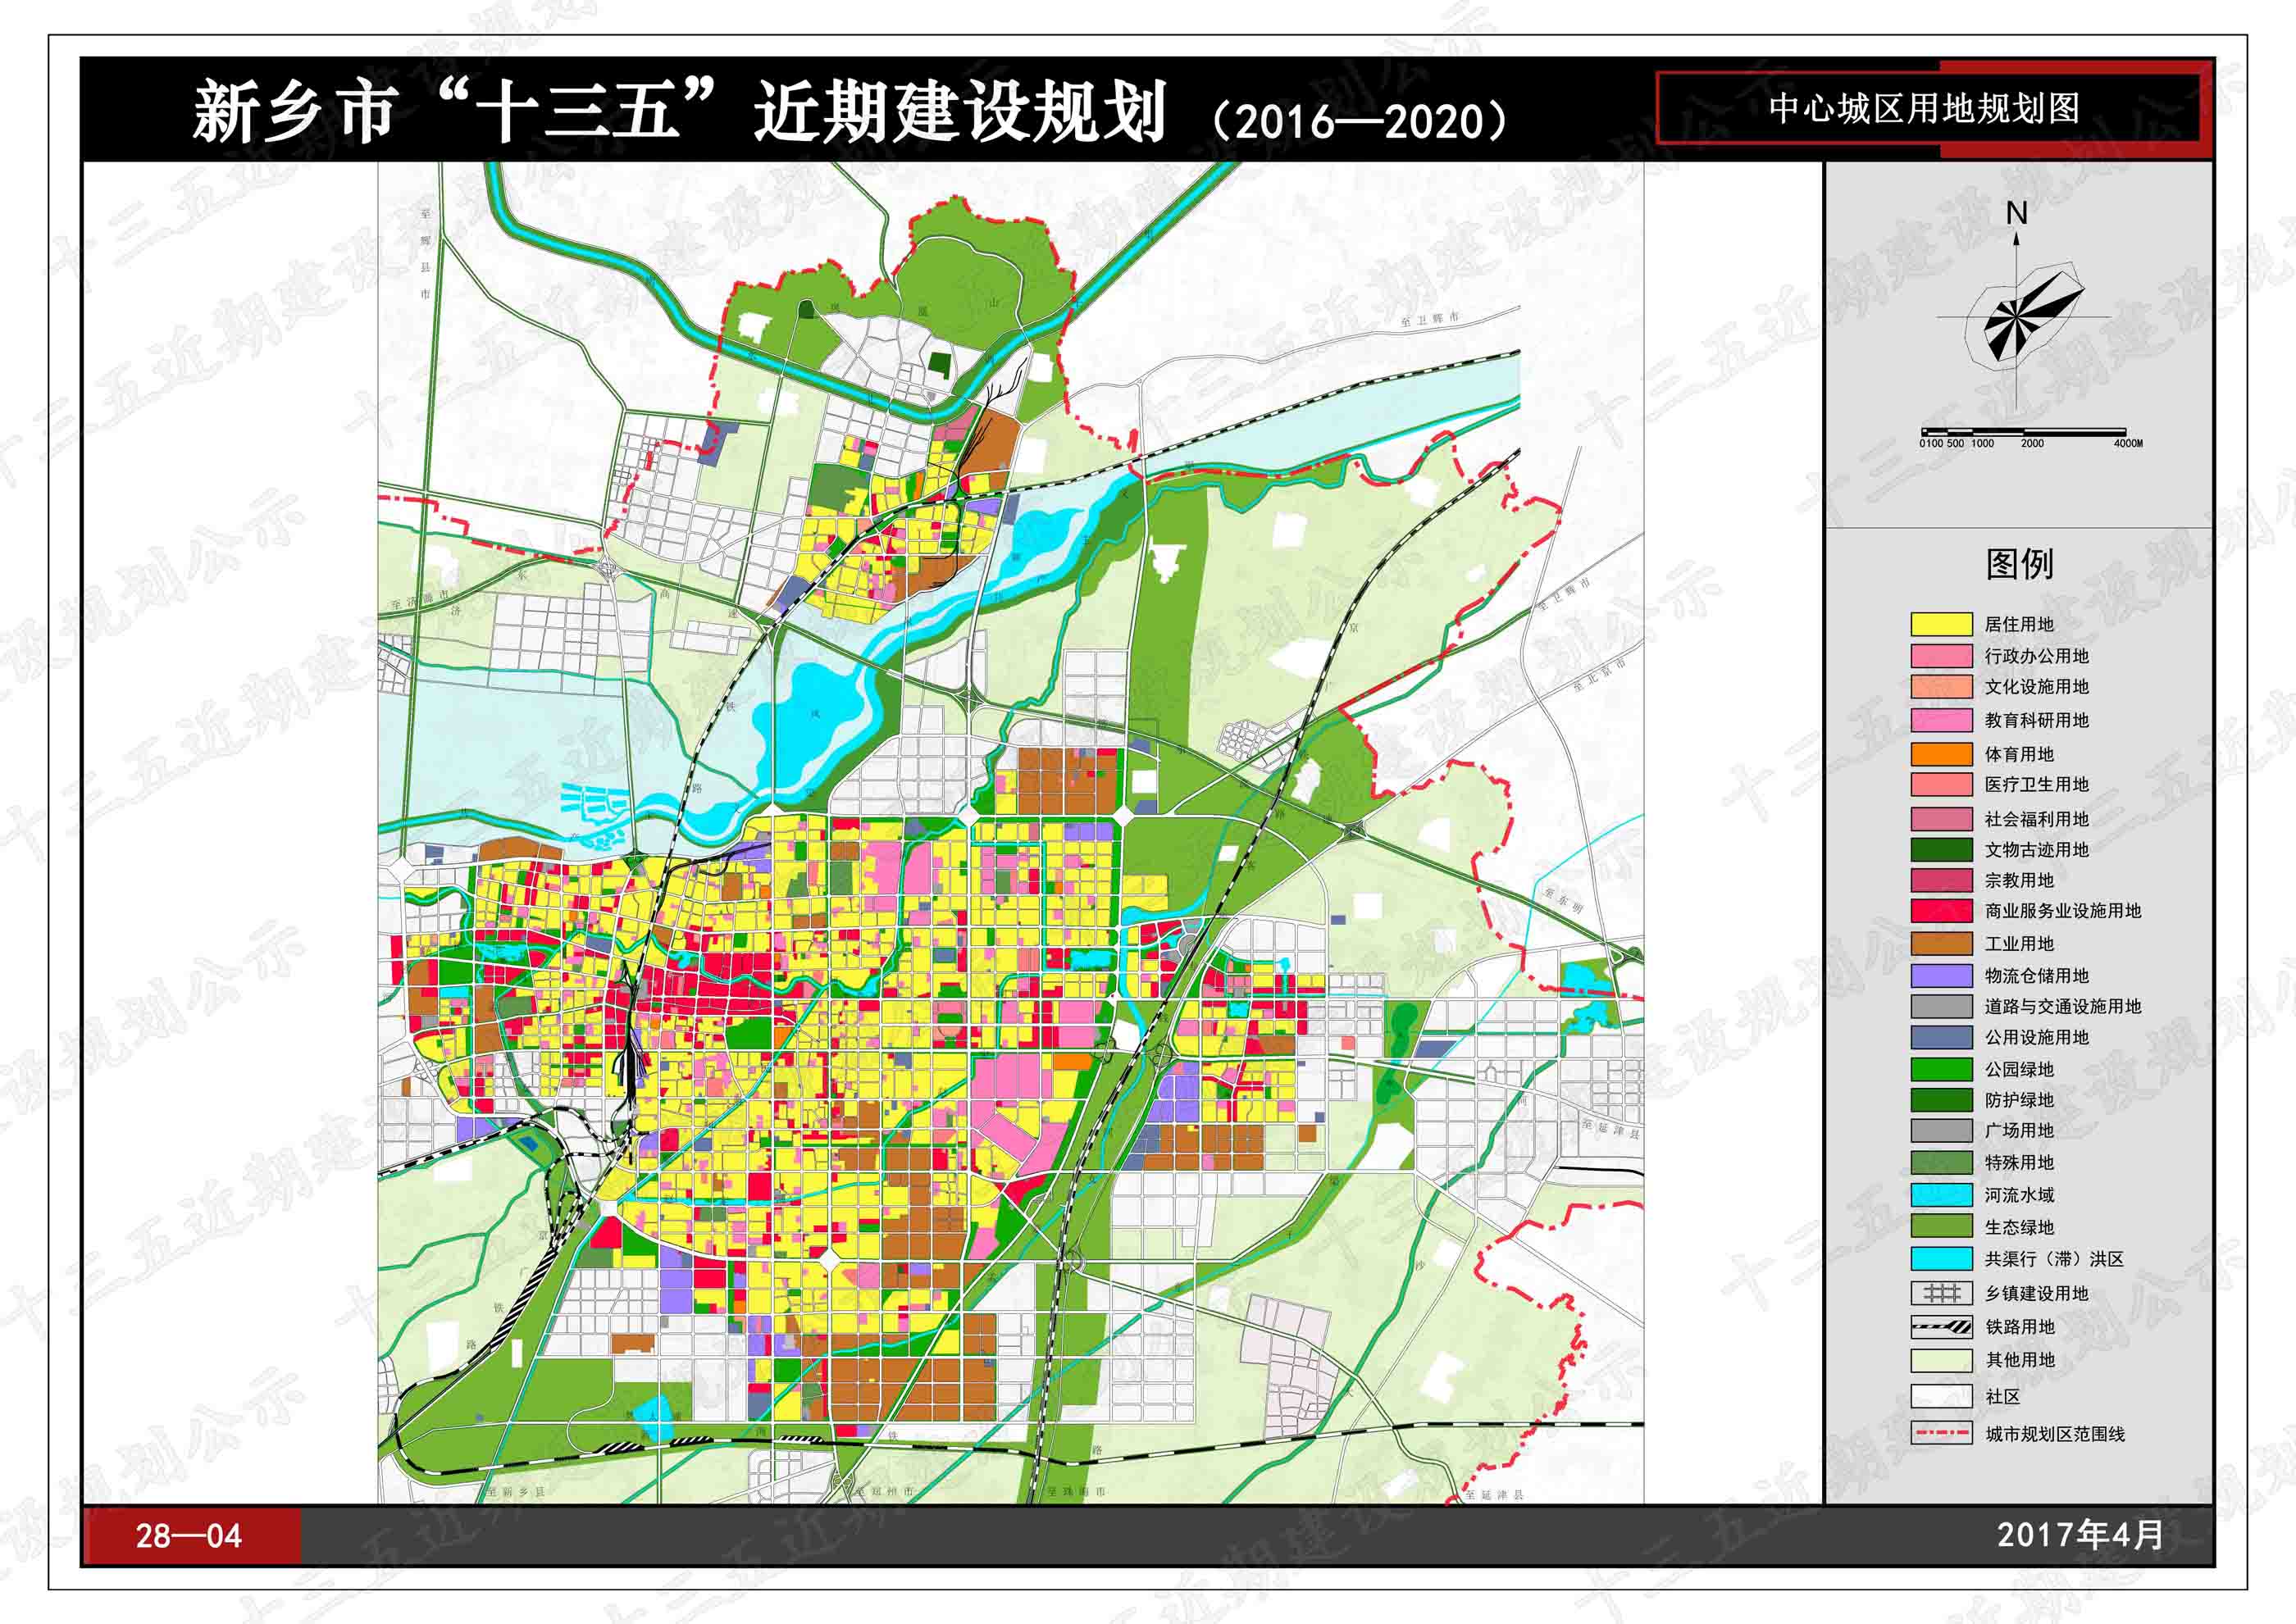 《新乡市城市总体规划(2011-2020年)》所确定的中心城区规划范围,建设